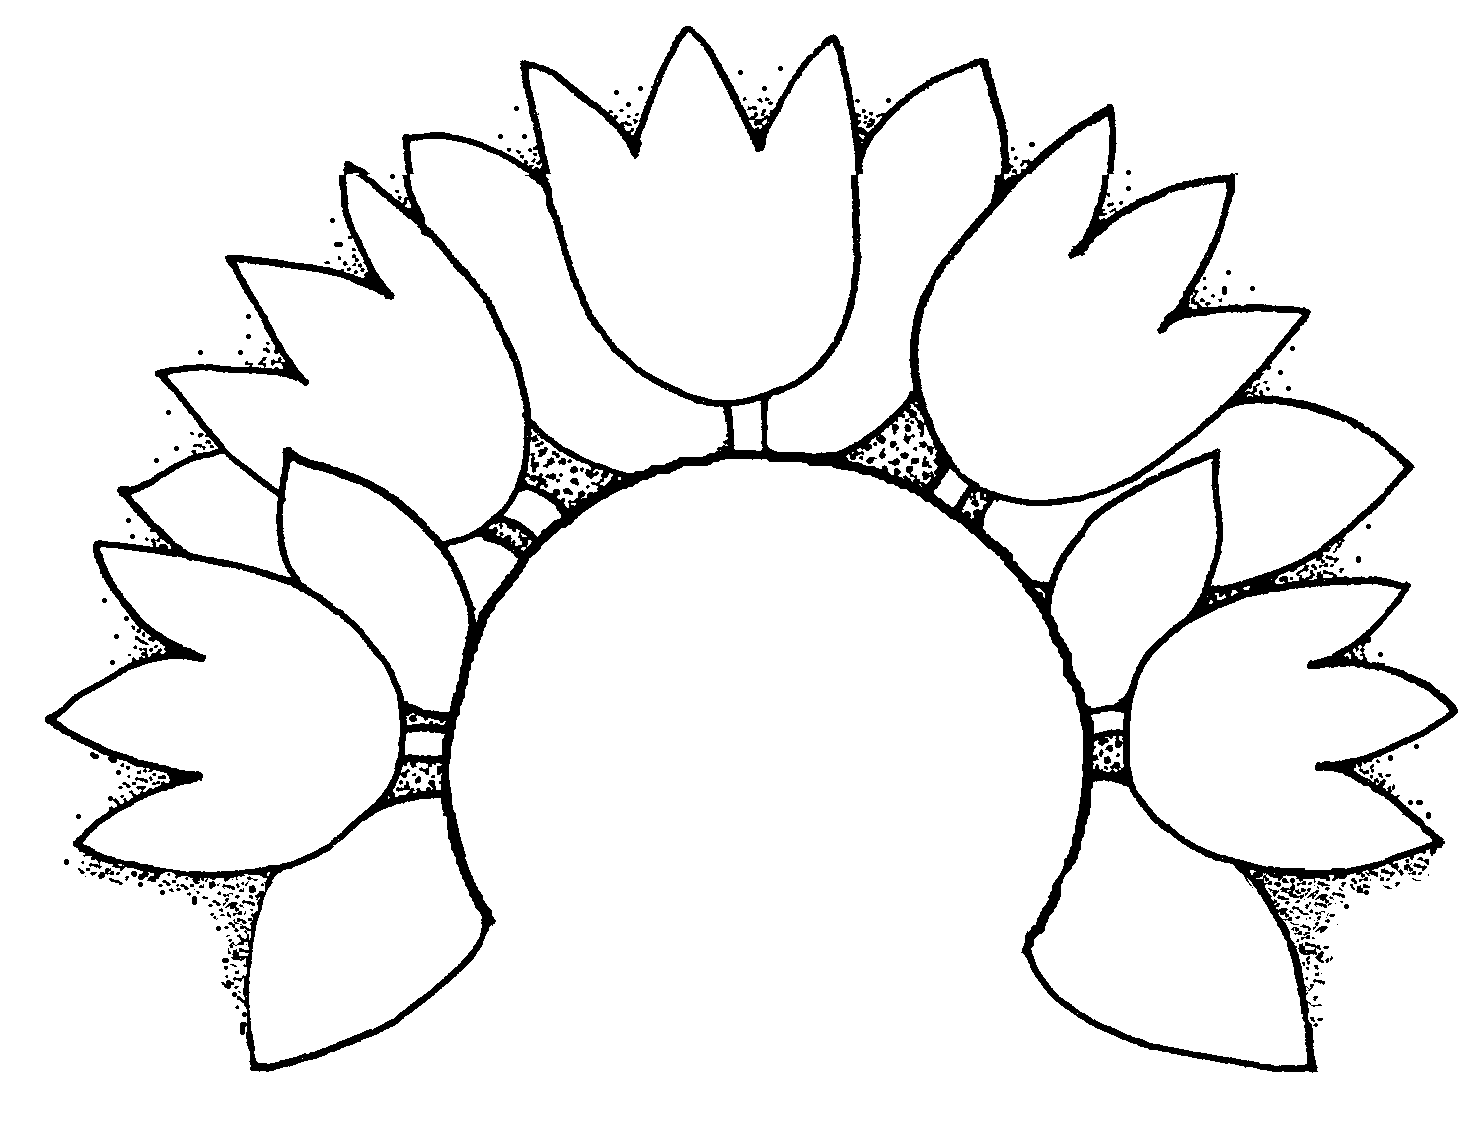 Flowers For > Sunflower In Vase Clip Art